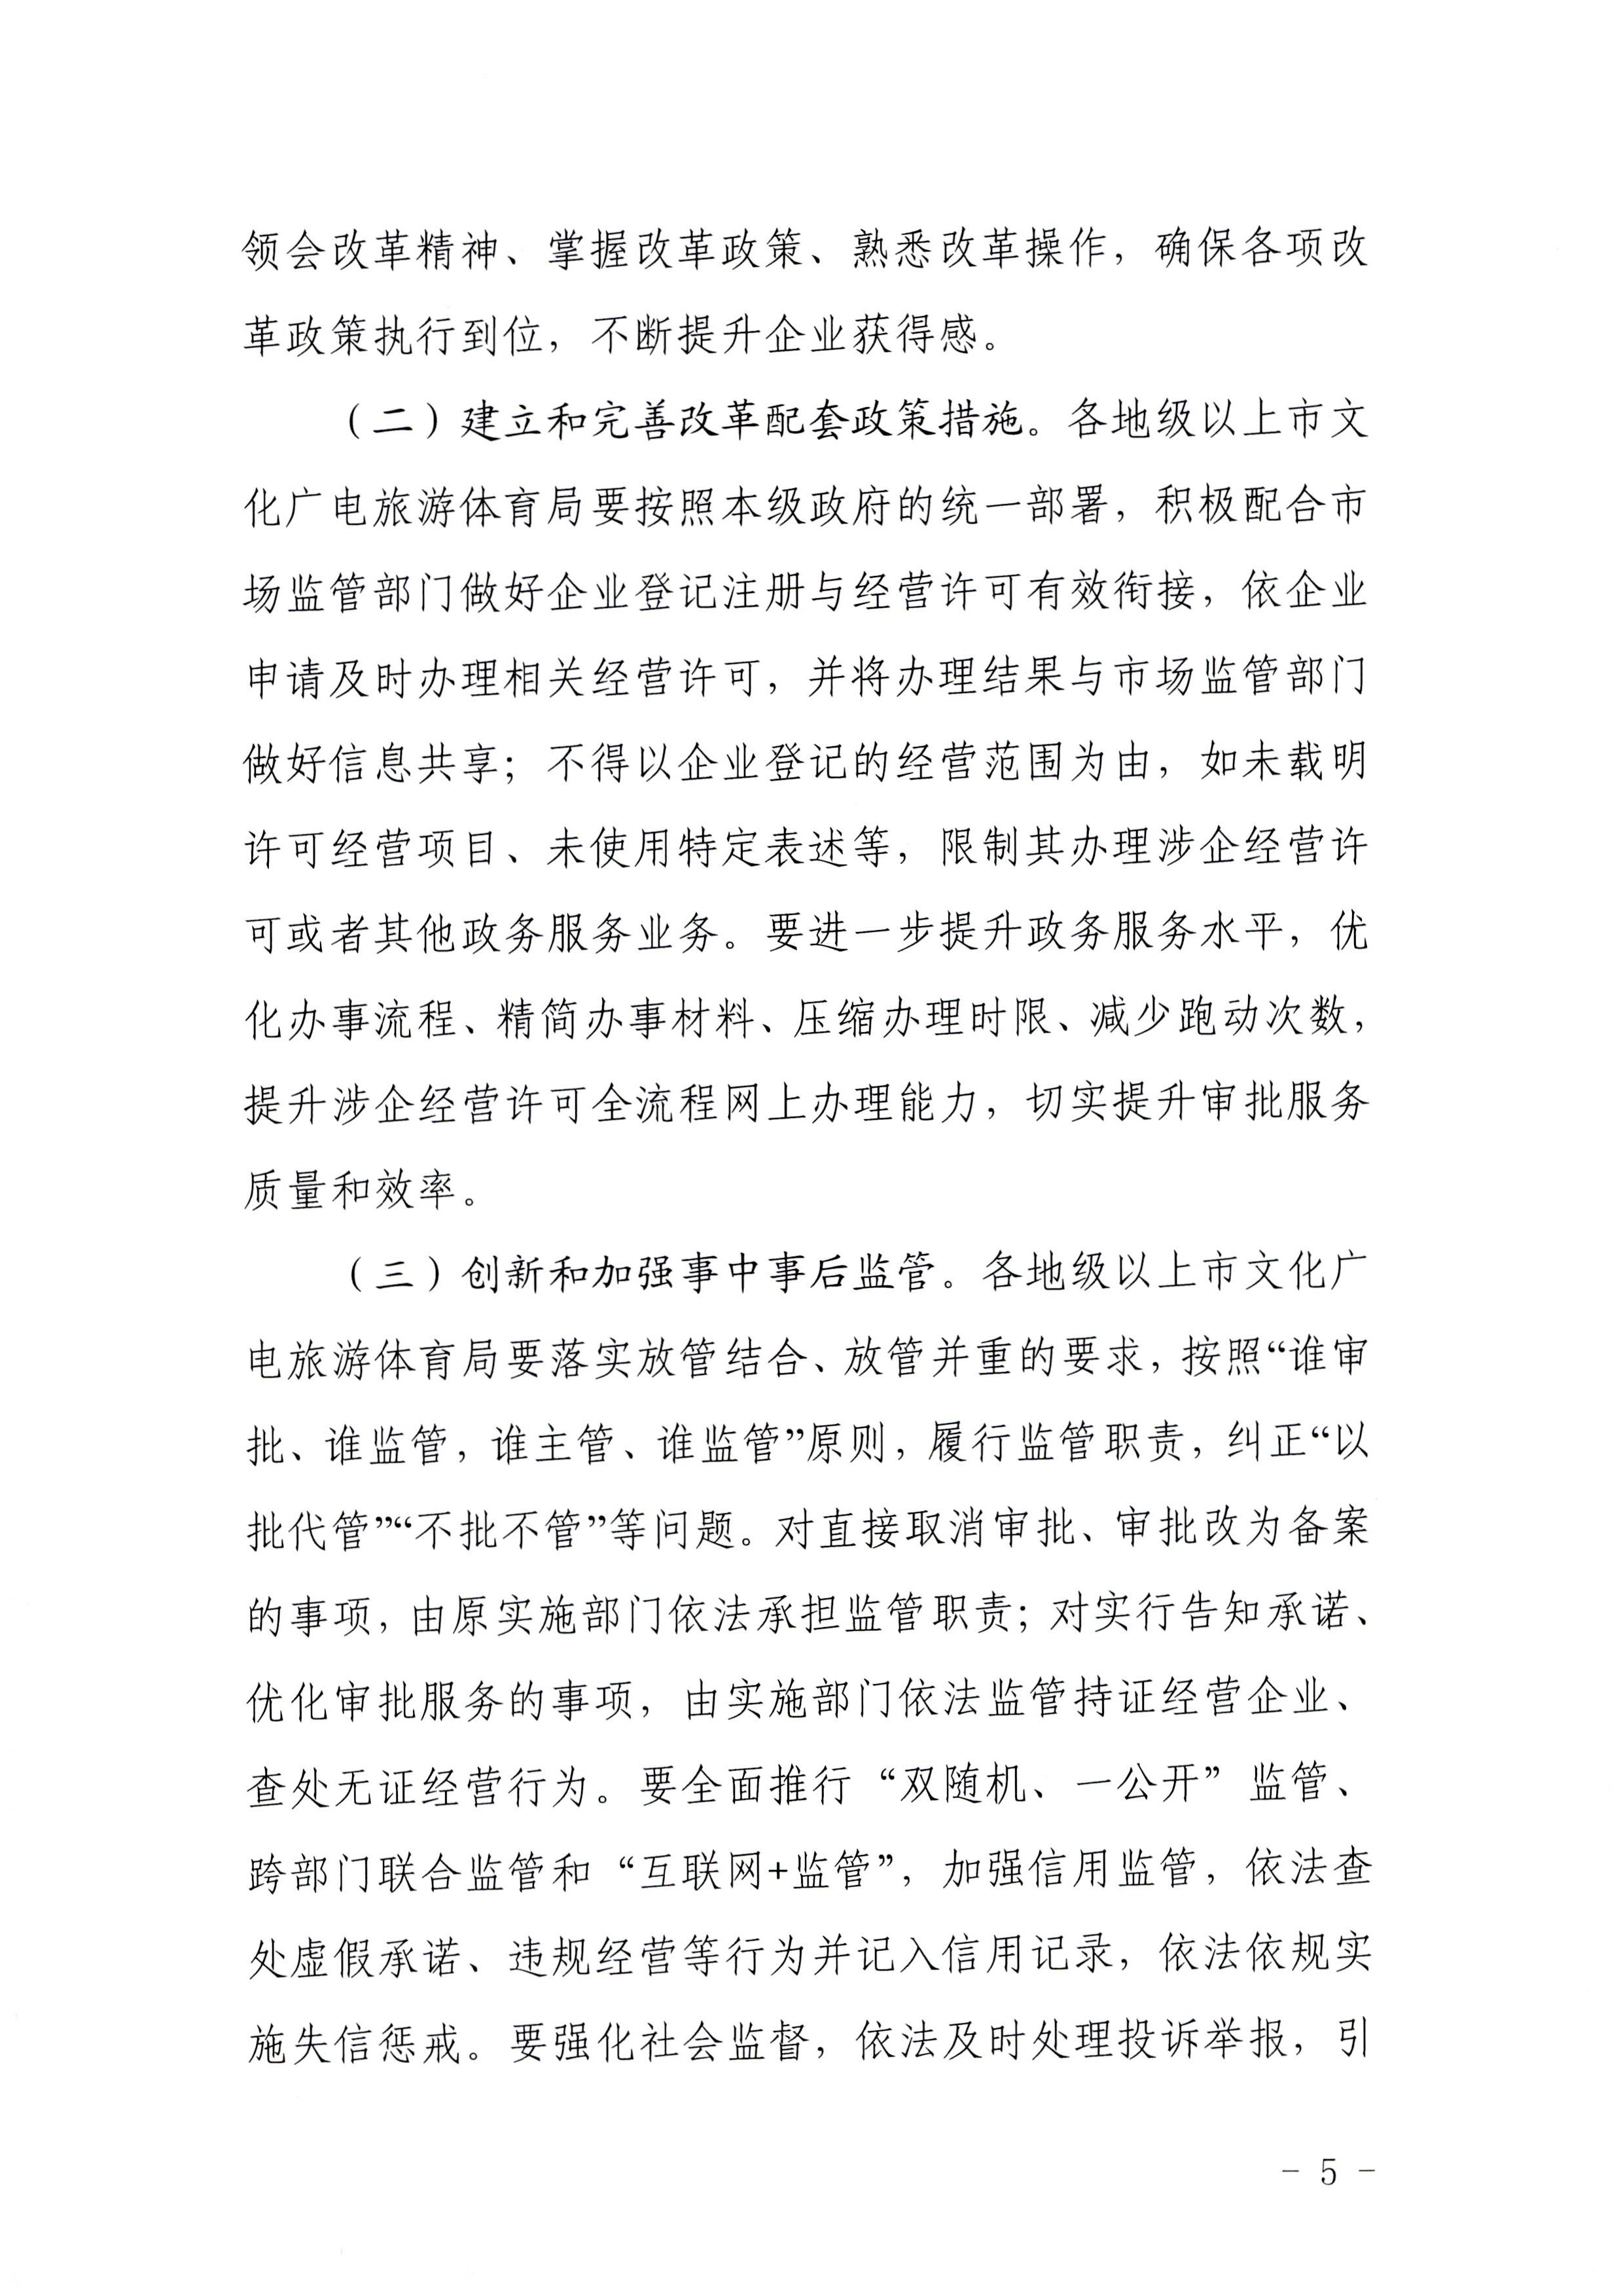 广东省文化和旅游厅印发证照分离改革实施方案的通知_页面_05.jpg